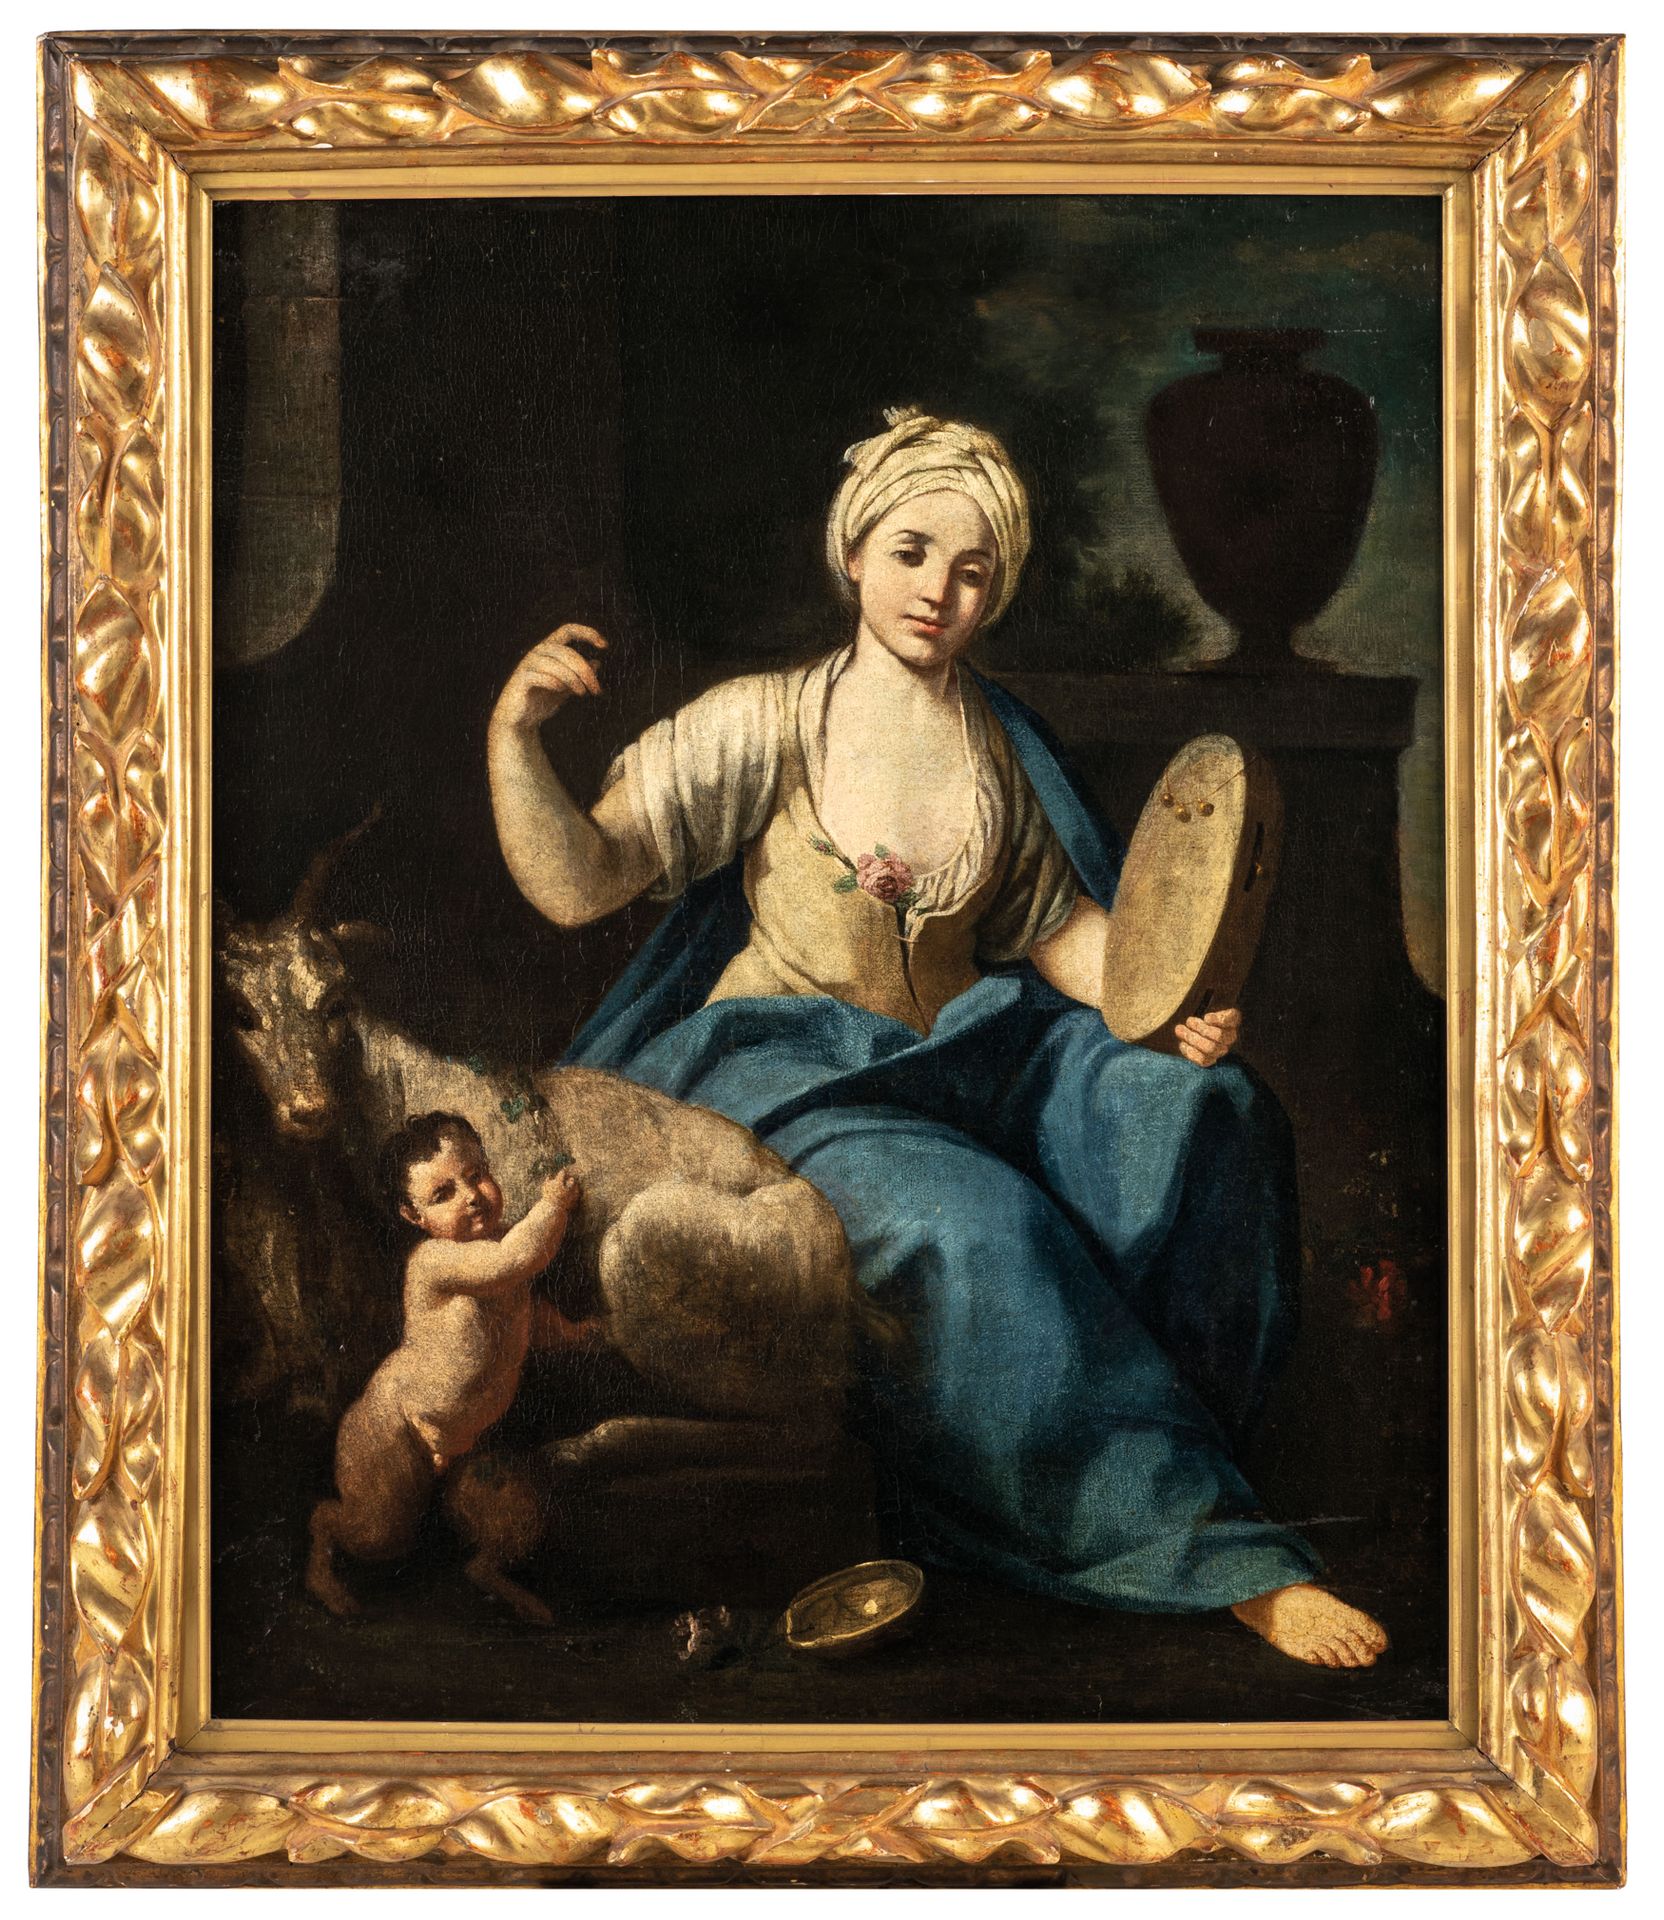 GIUSEPPE GAMBARINI (Bologna, 1680 - Casalecchio di Reno, 1725)
Girl with a tambo&hellip;